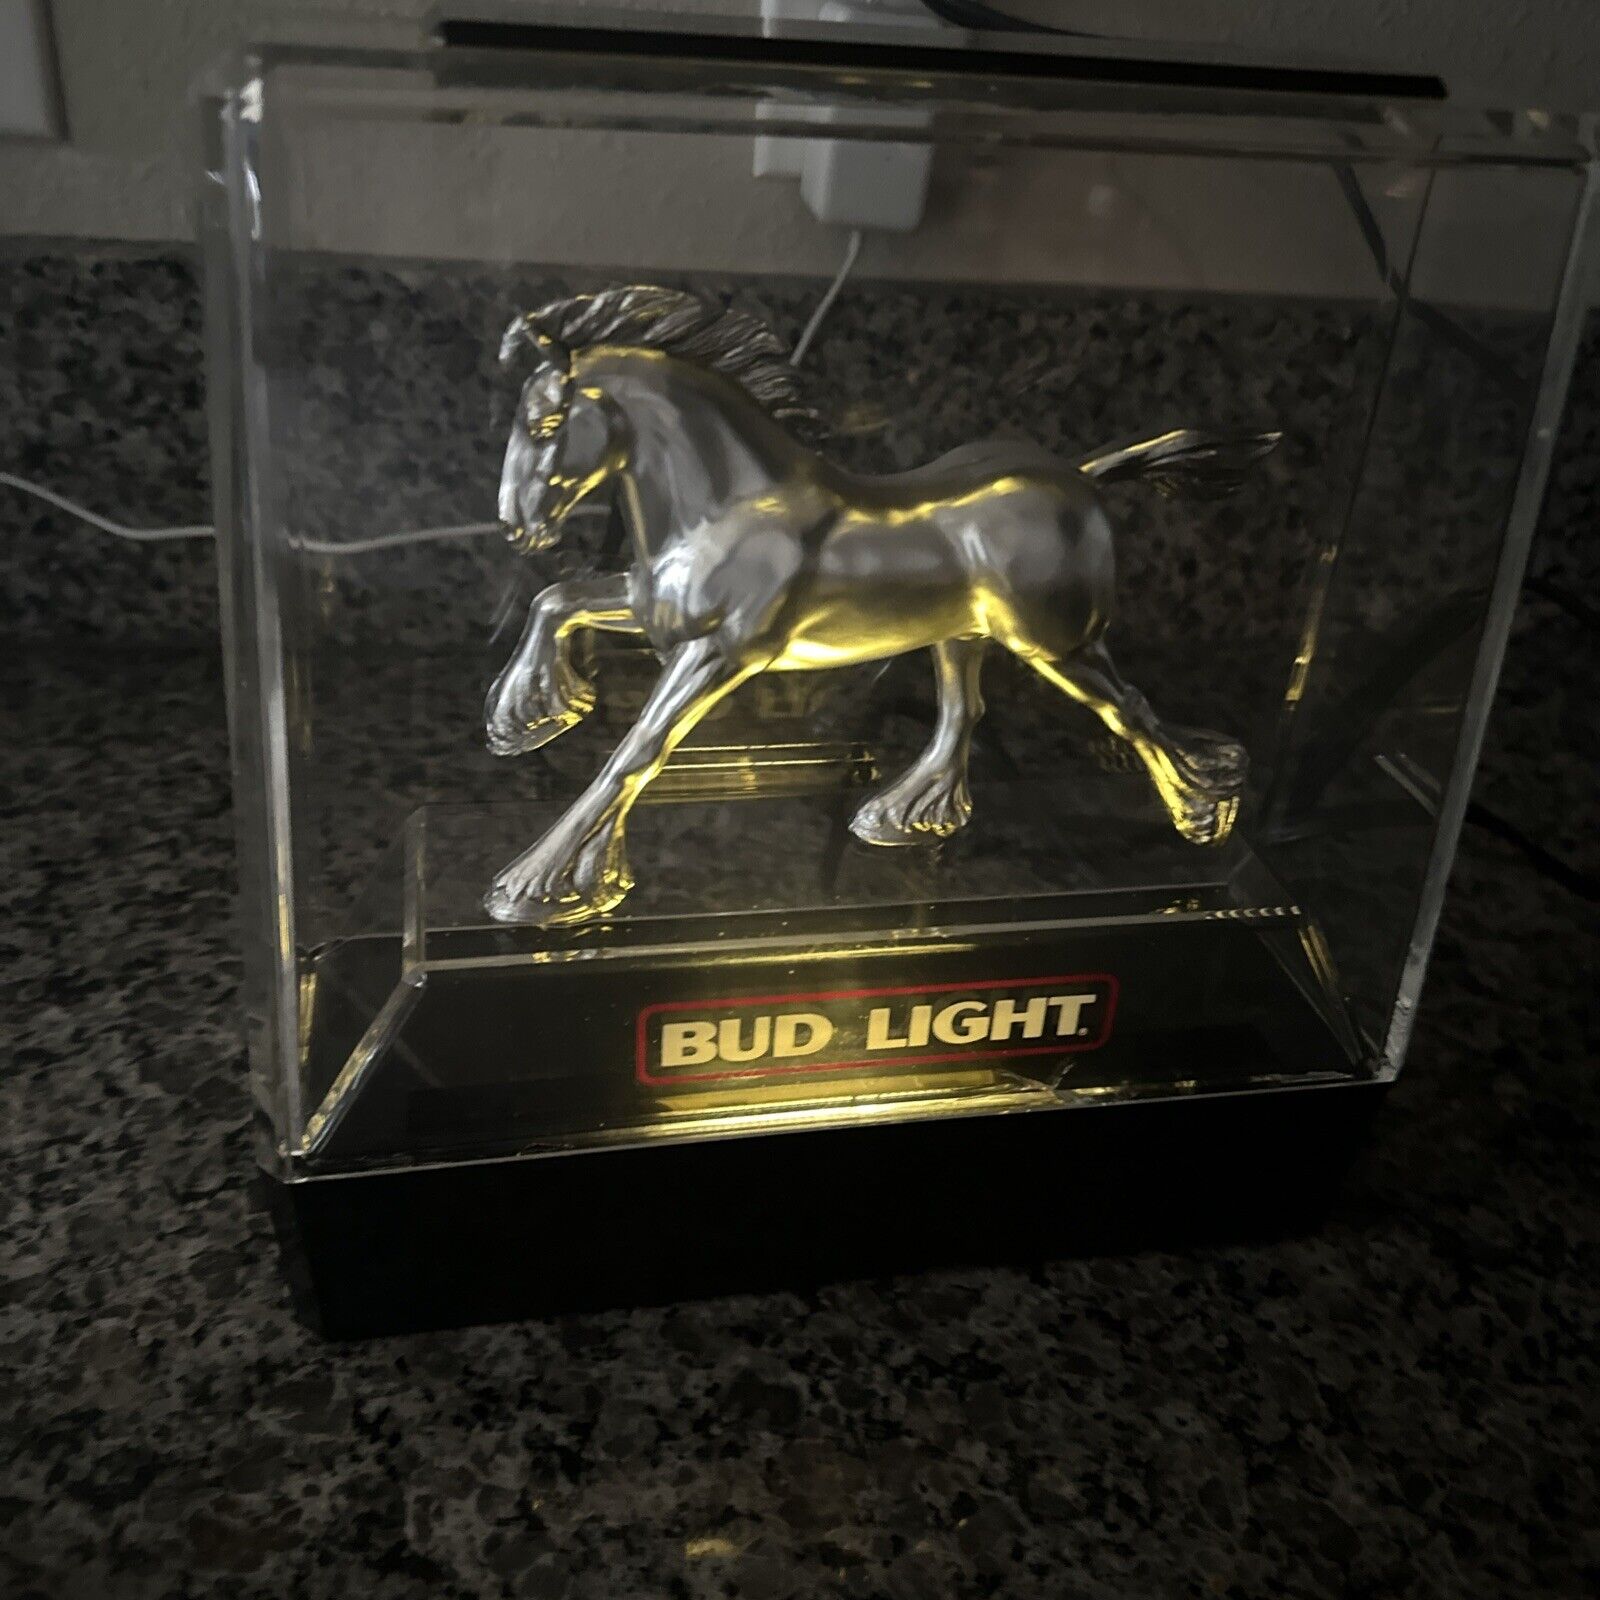 Bud Light Beer Silver Clydesdale Horse Light Up Display 1982 Bar Sign Vintage